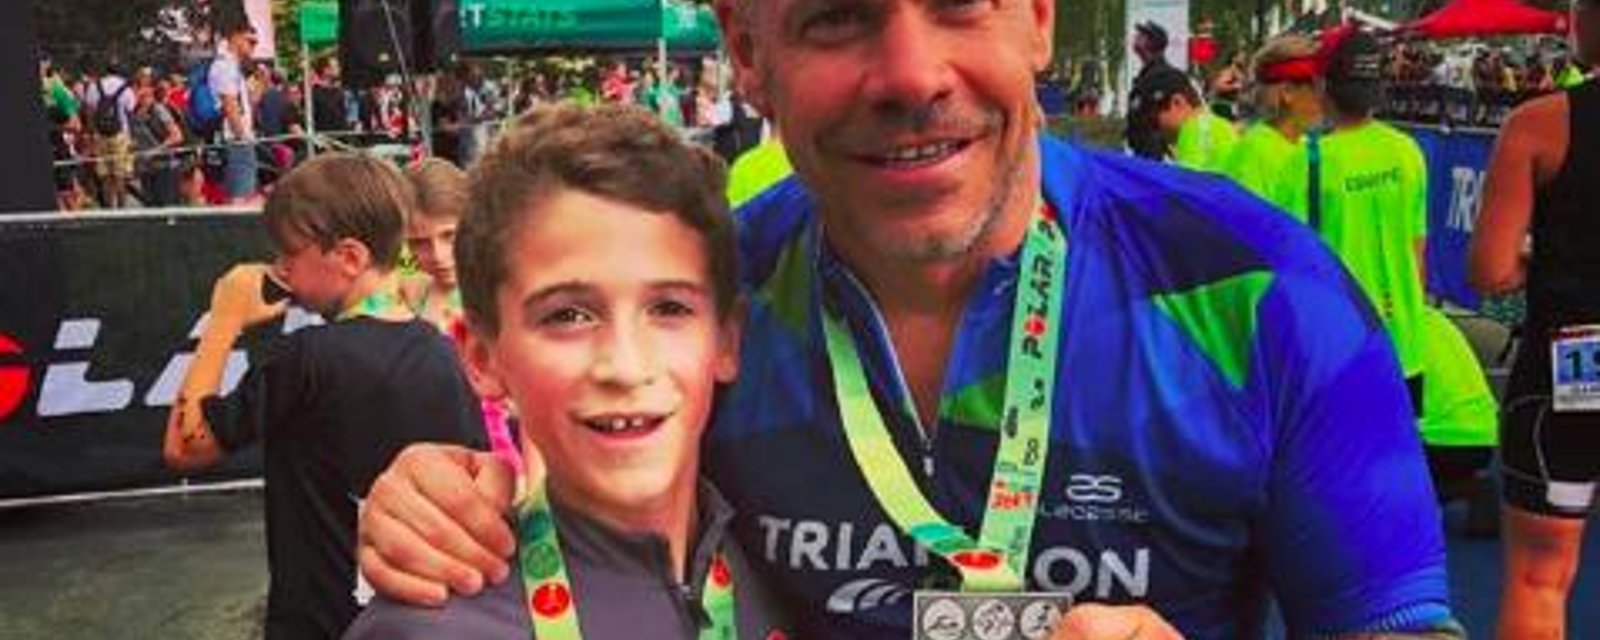 Maxim Martin ne pourrait être plus fier de son fils qui a réussi son 1er triathlon